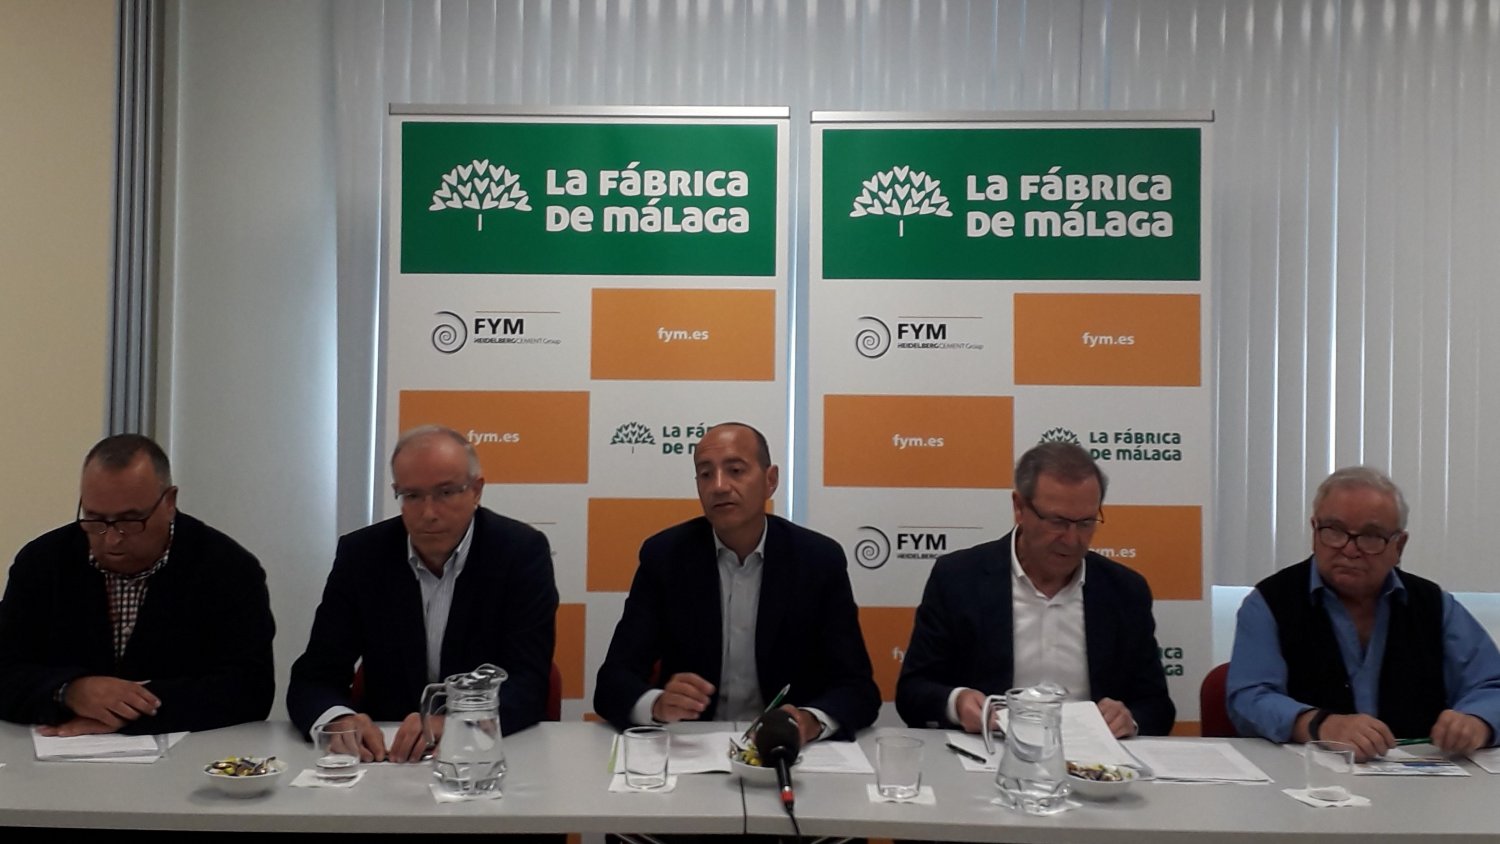 FYM-HeidelbergCement pone en marcha un programa para fomentar el reciclaje entre sus trabajadores de la fábrica de Málaga